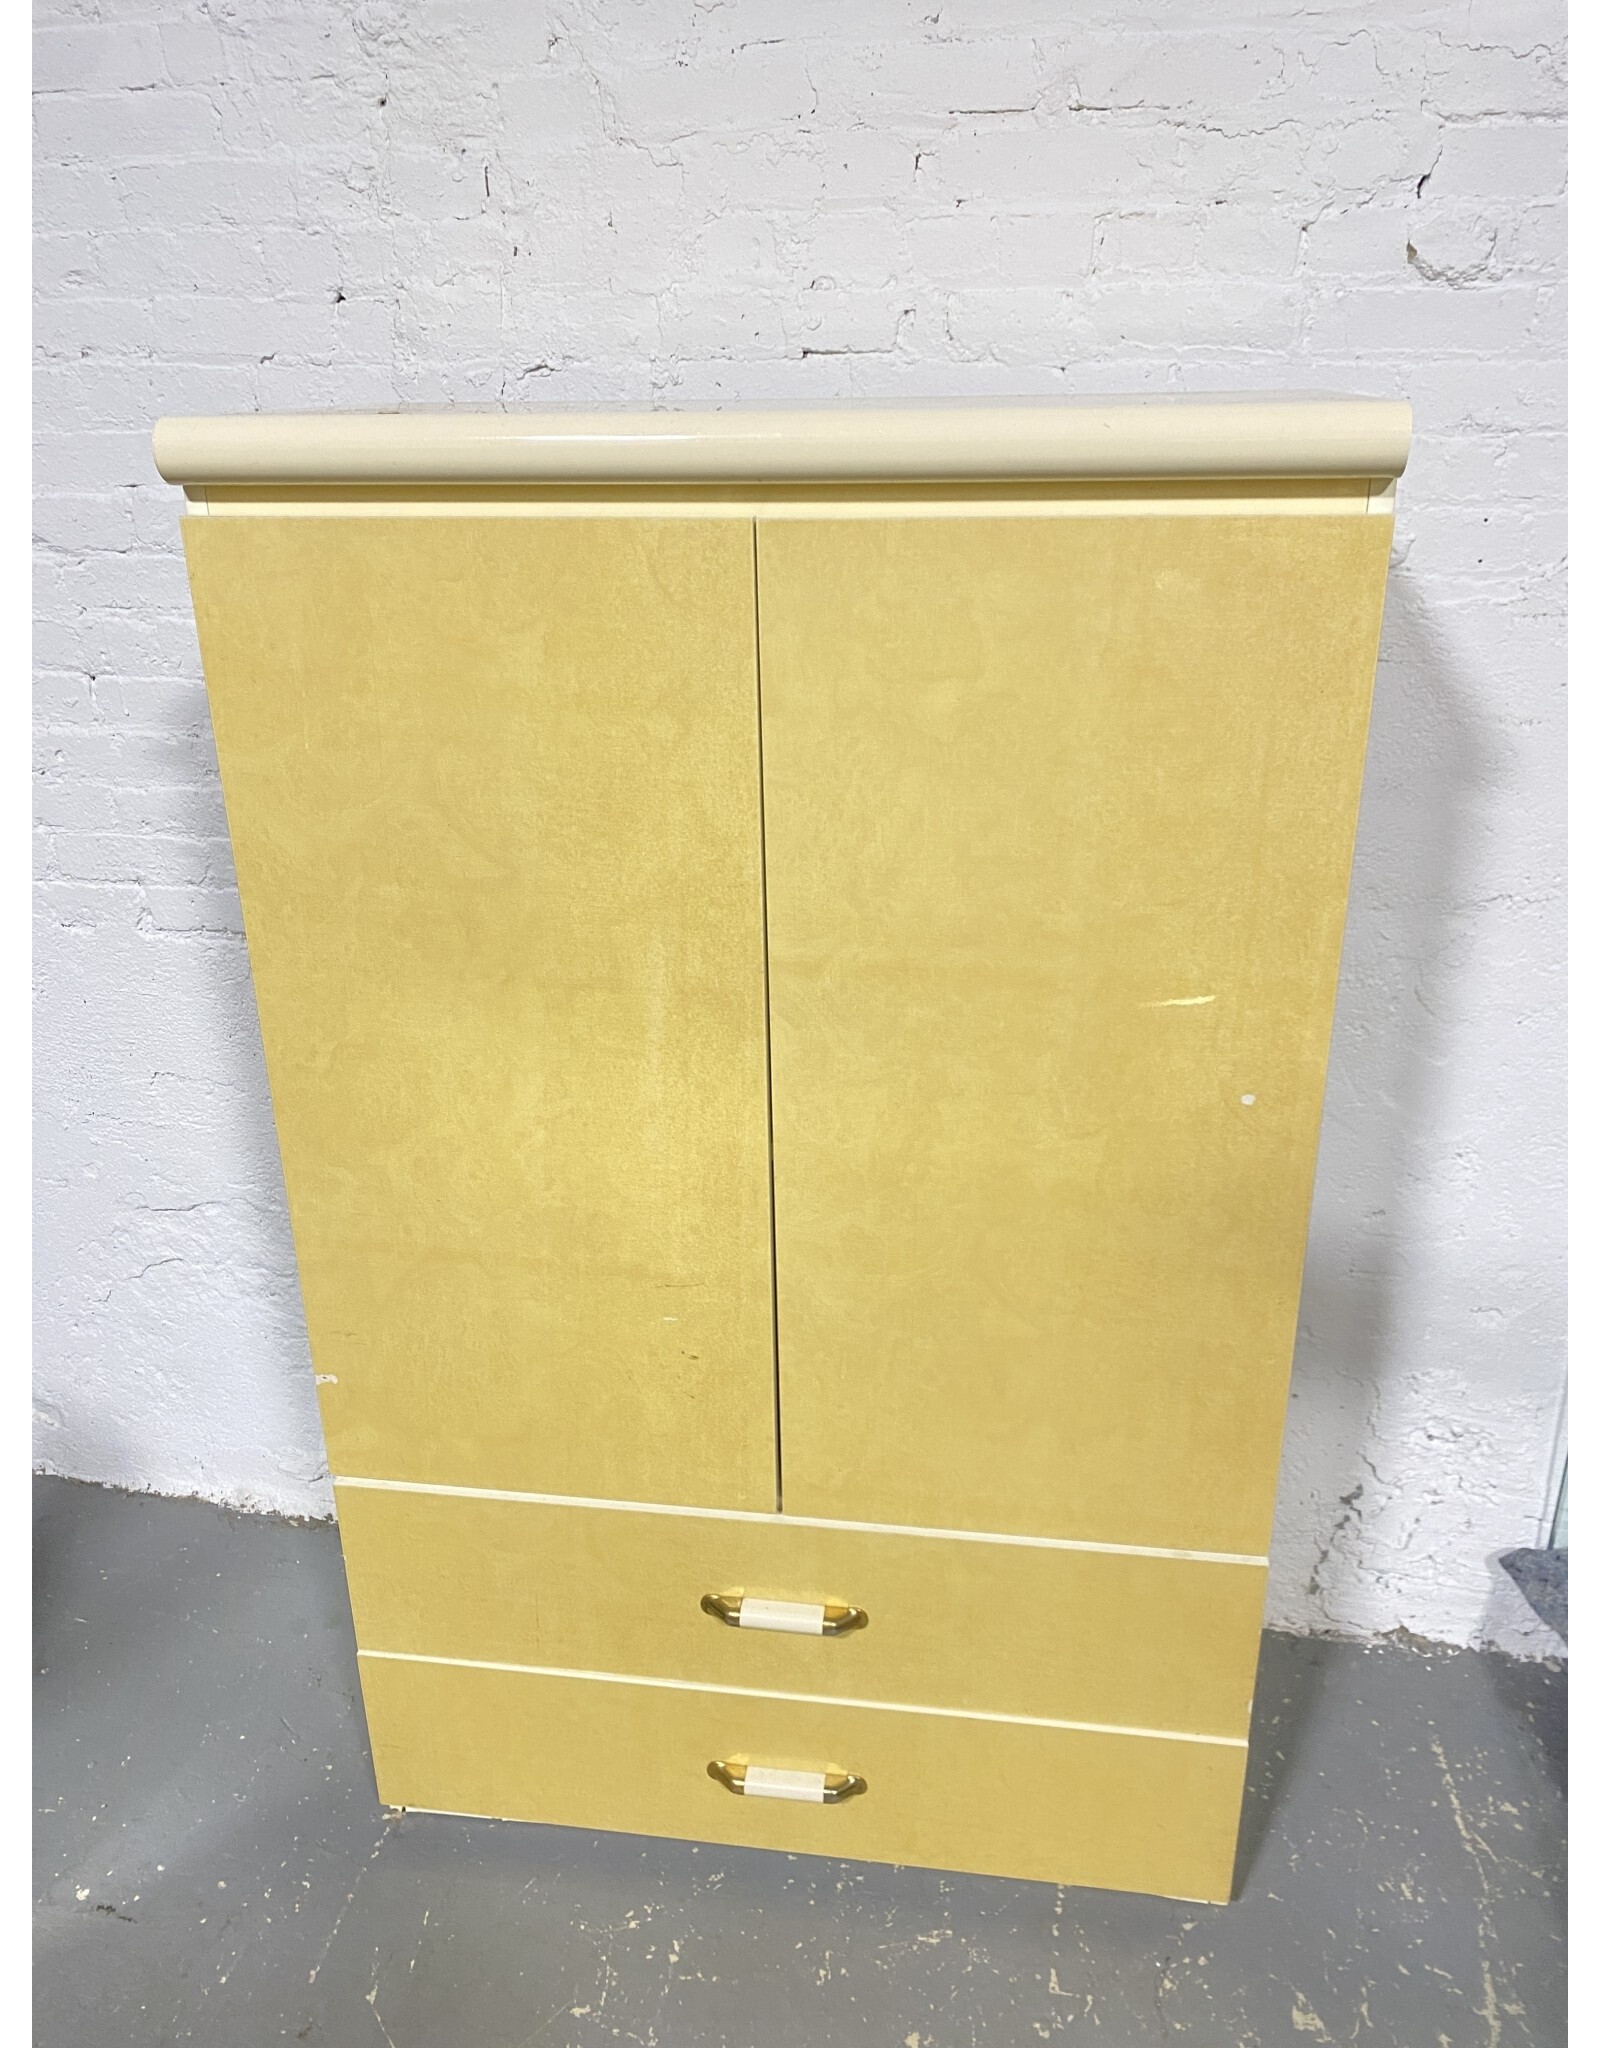 Wood Storage/Wardrobe Cabinet